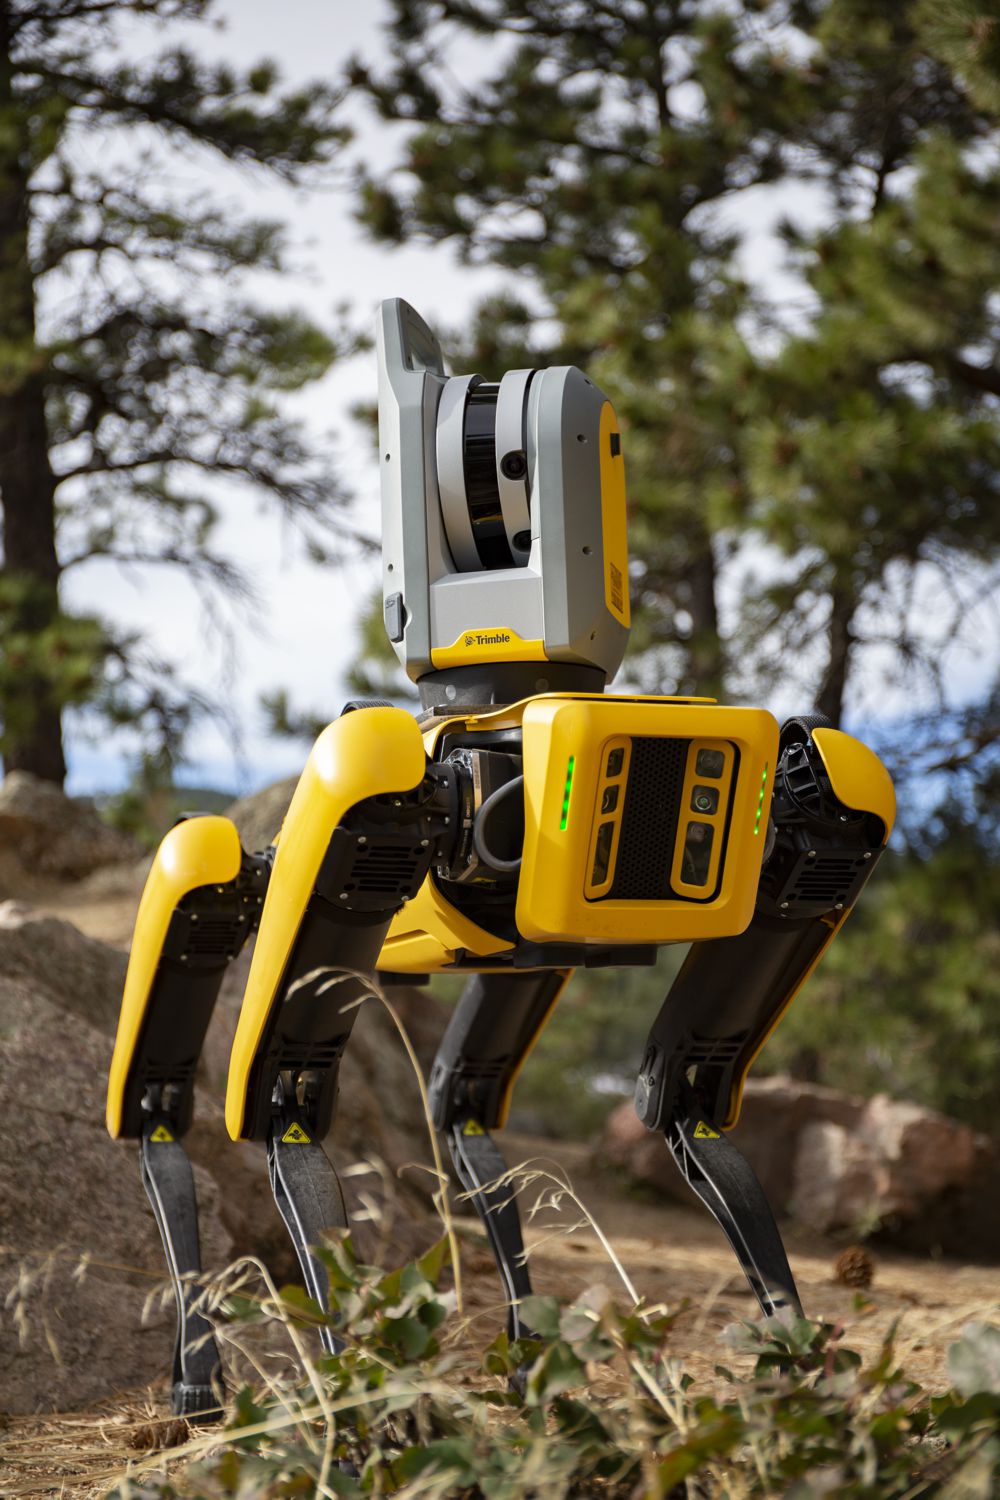 Trimble, Hilti and Boston Dynamics partner to Explore Autonomous Robots in Construction